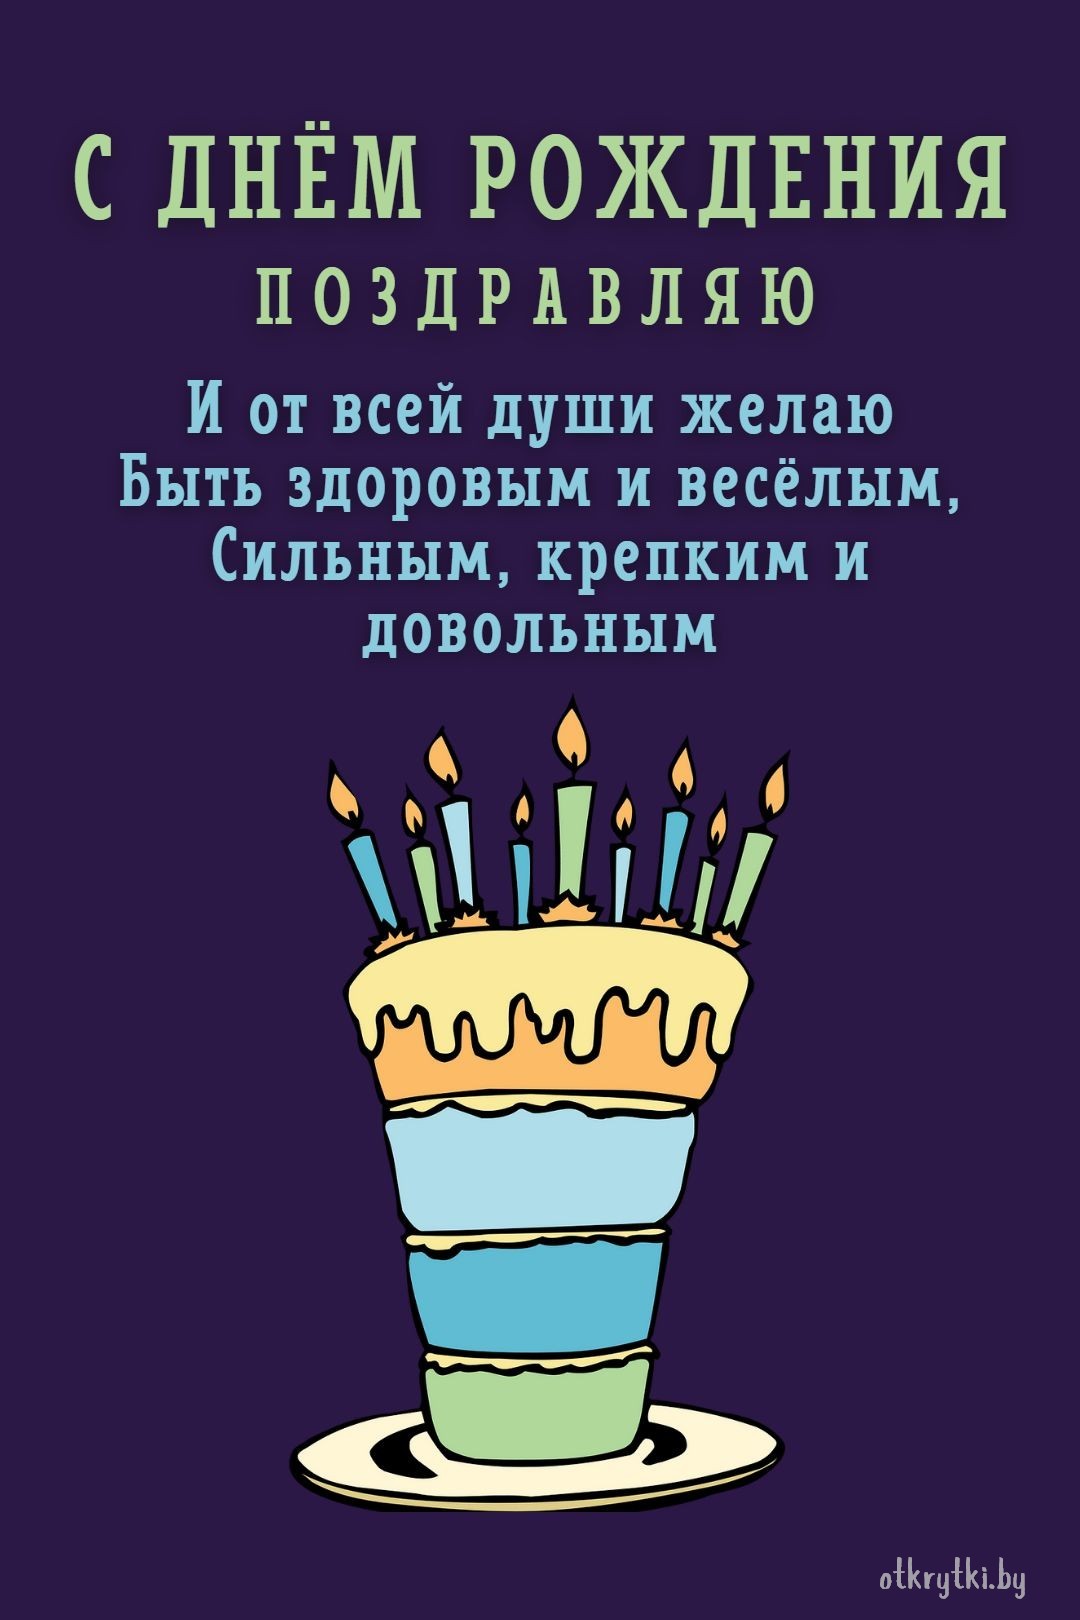 Картинка с днем рождения с тортиком